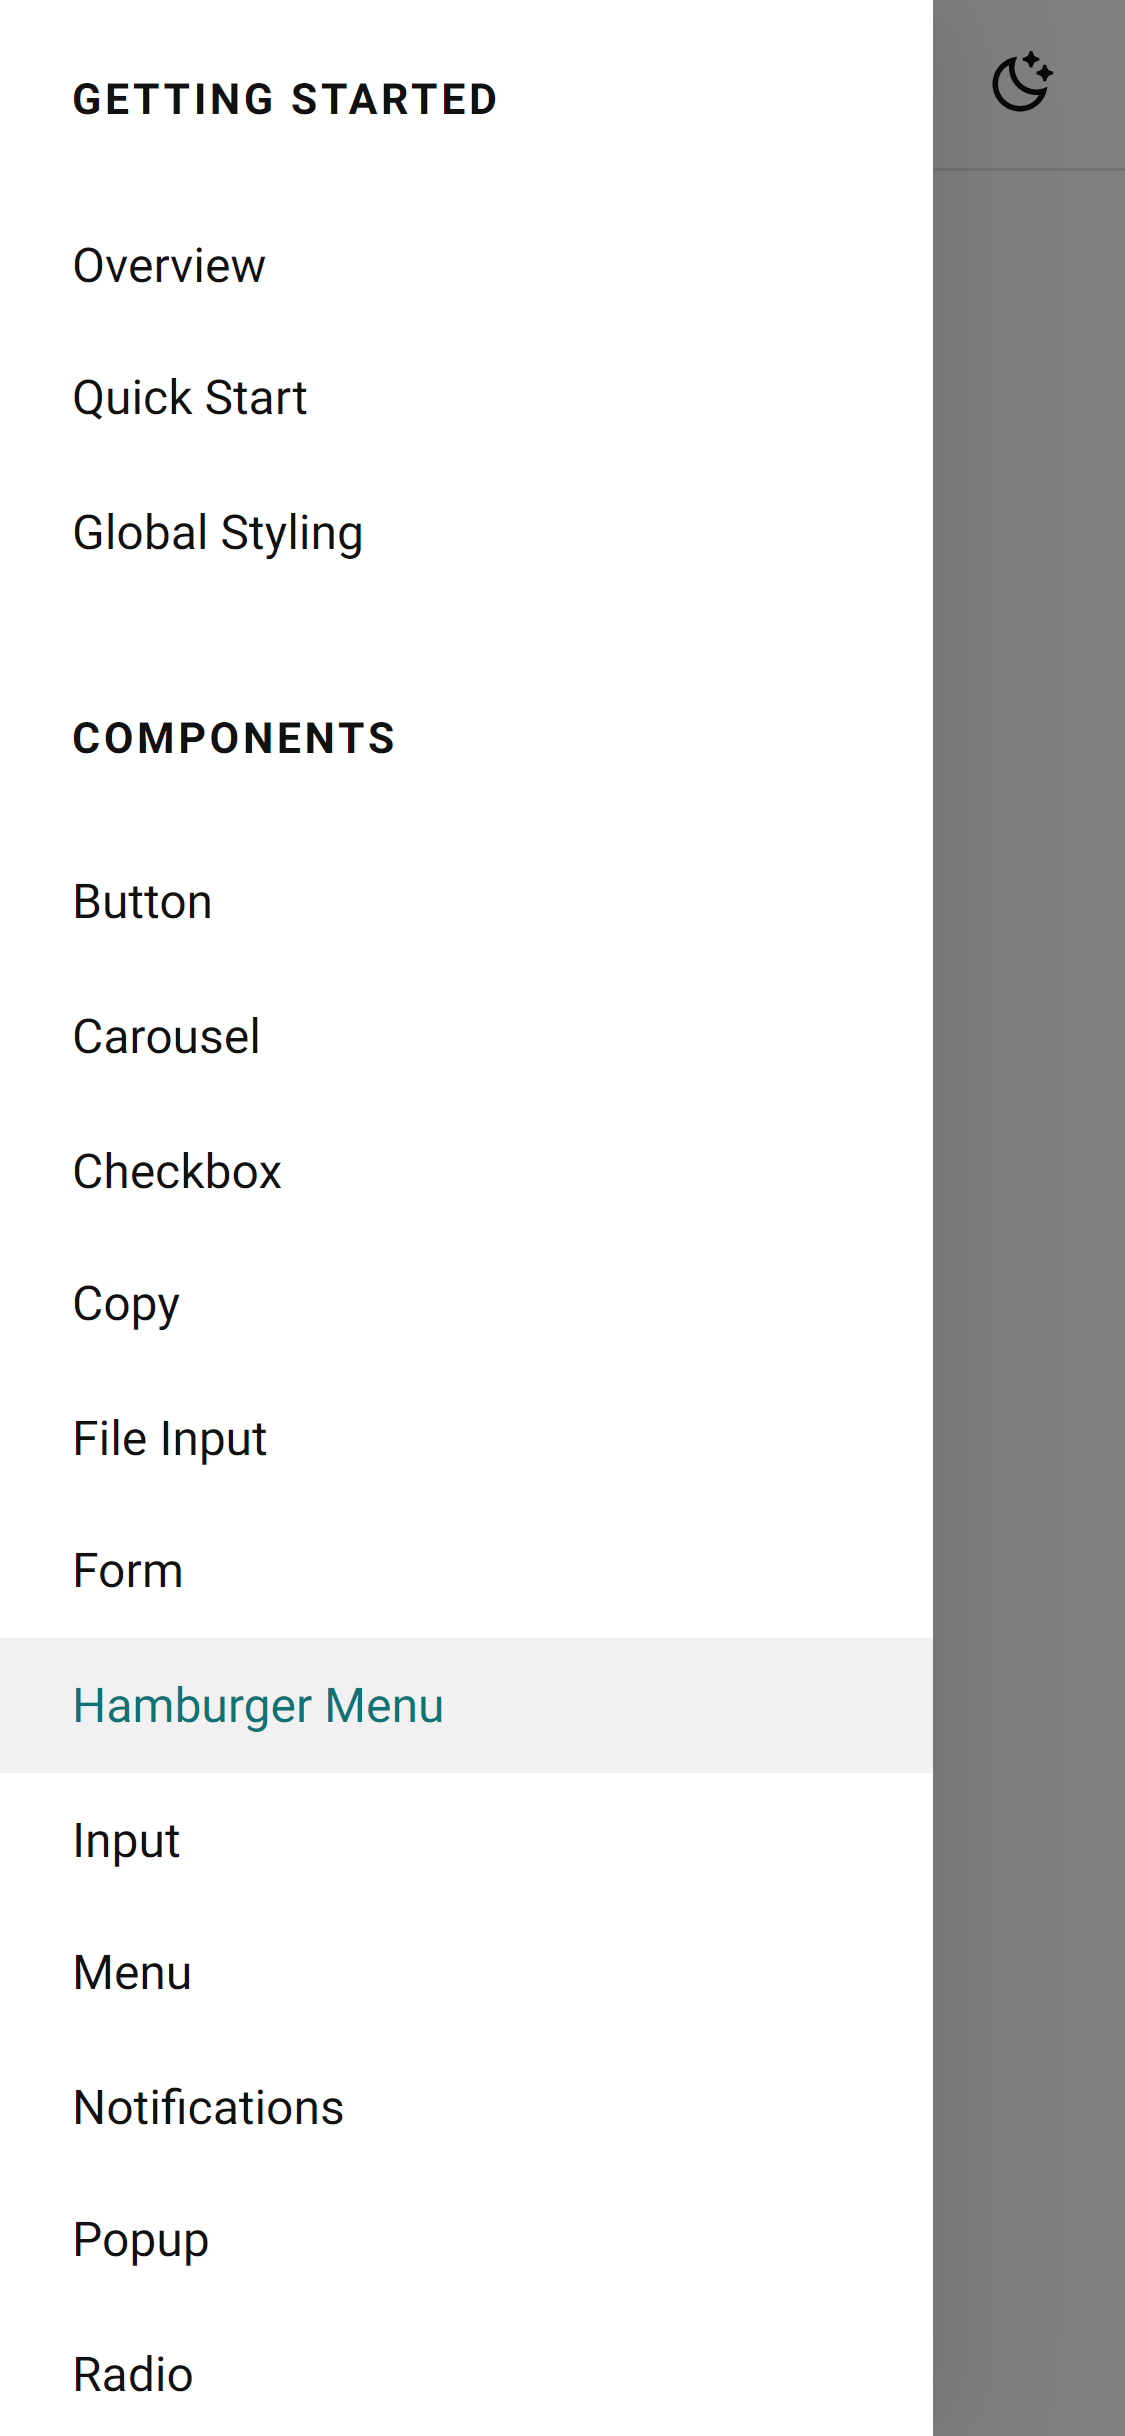 Hamburger menu opened